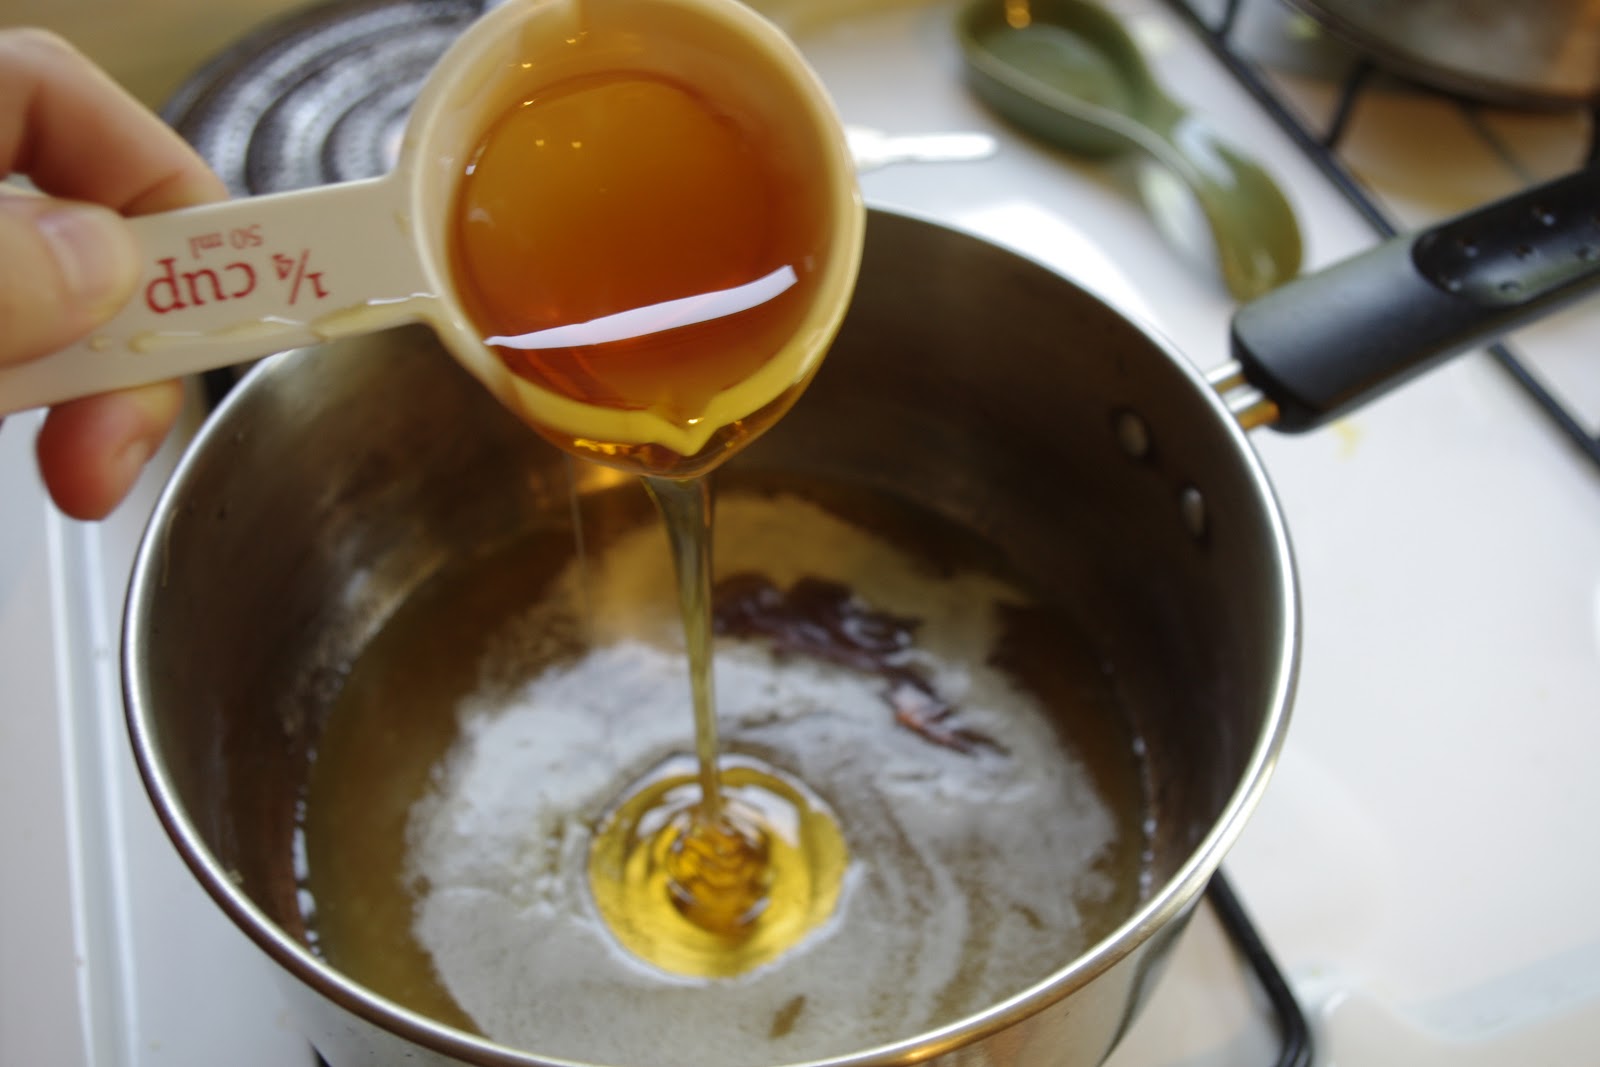 Рецепт медового масла